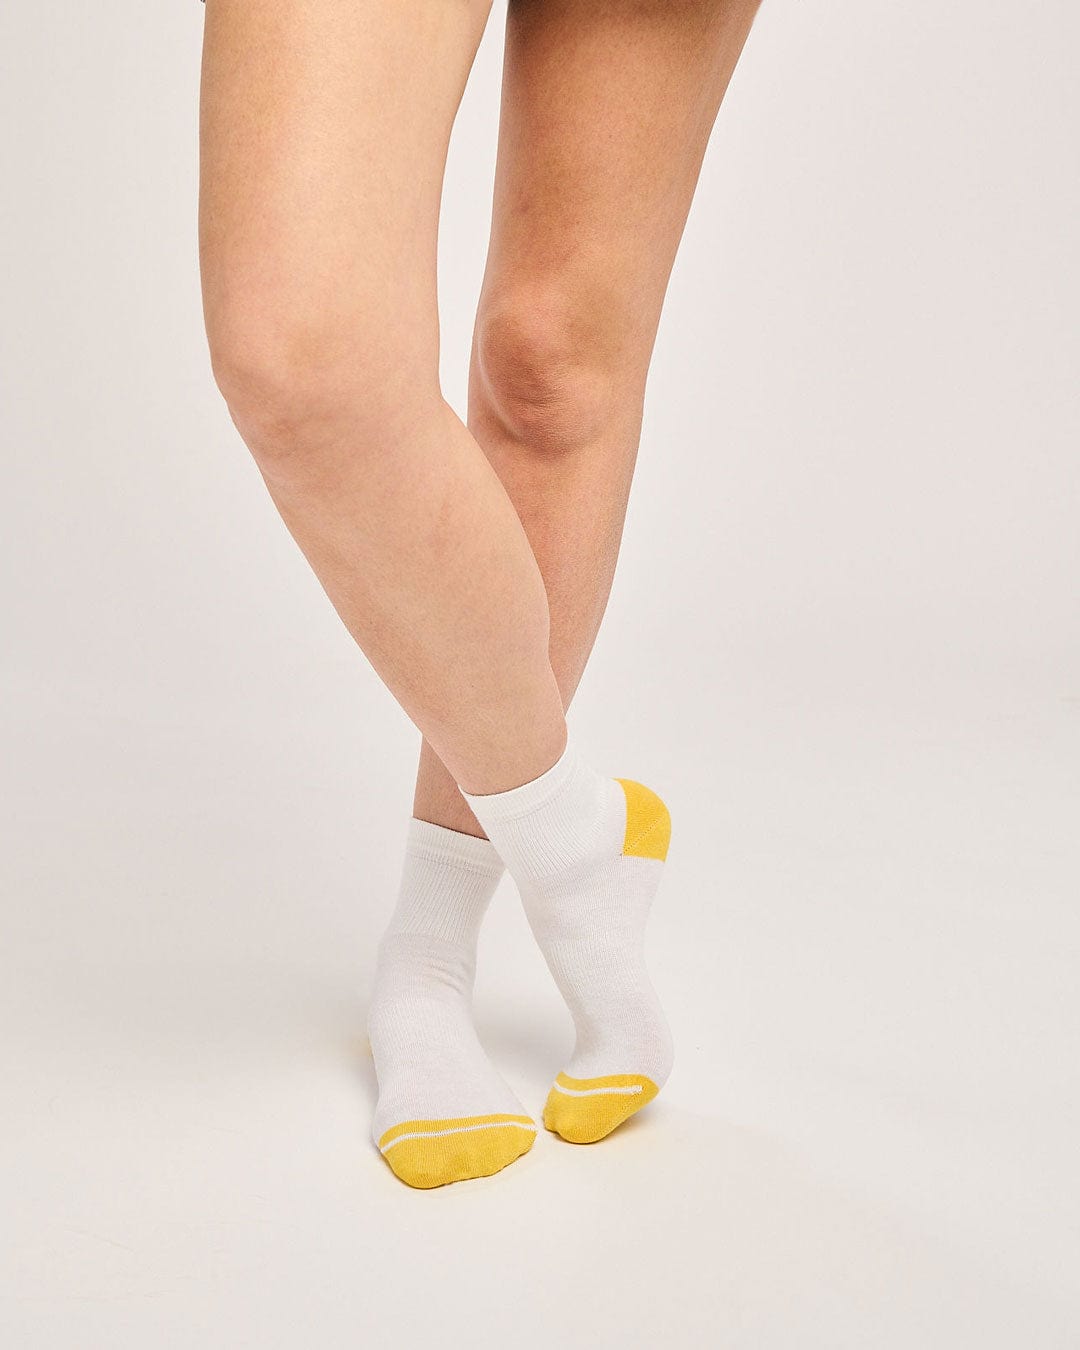 Ecofriendly white ankle socks. Quarter length socks for running